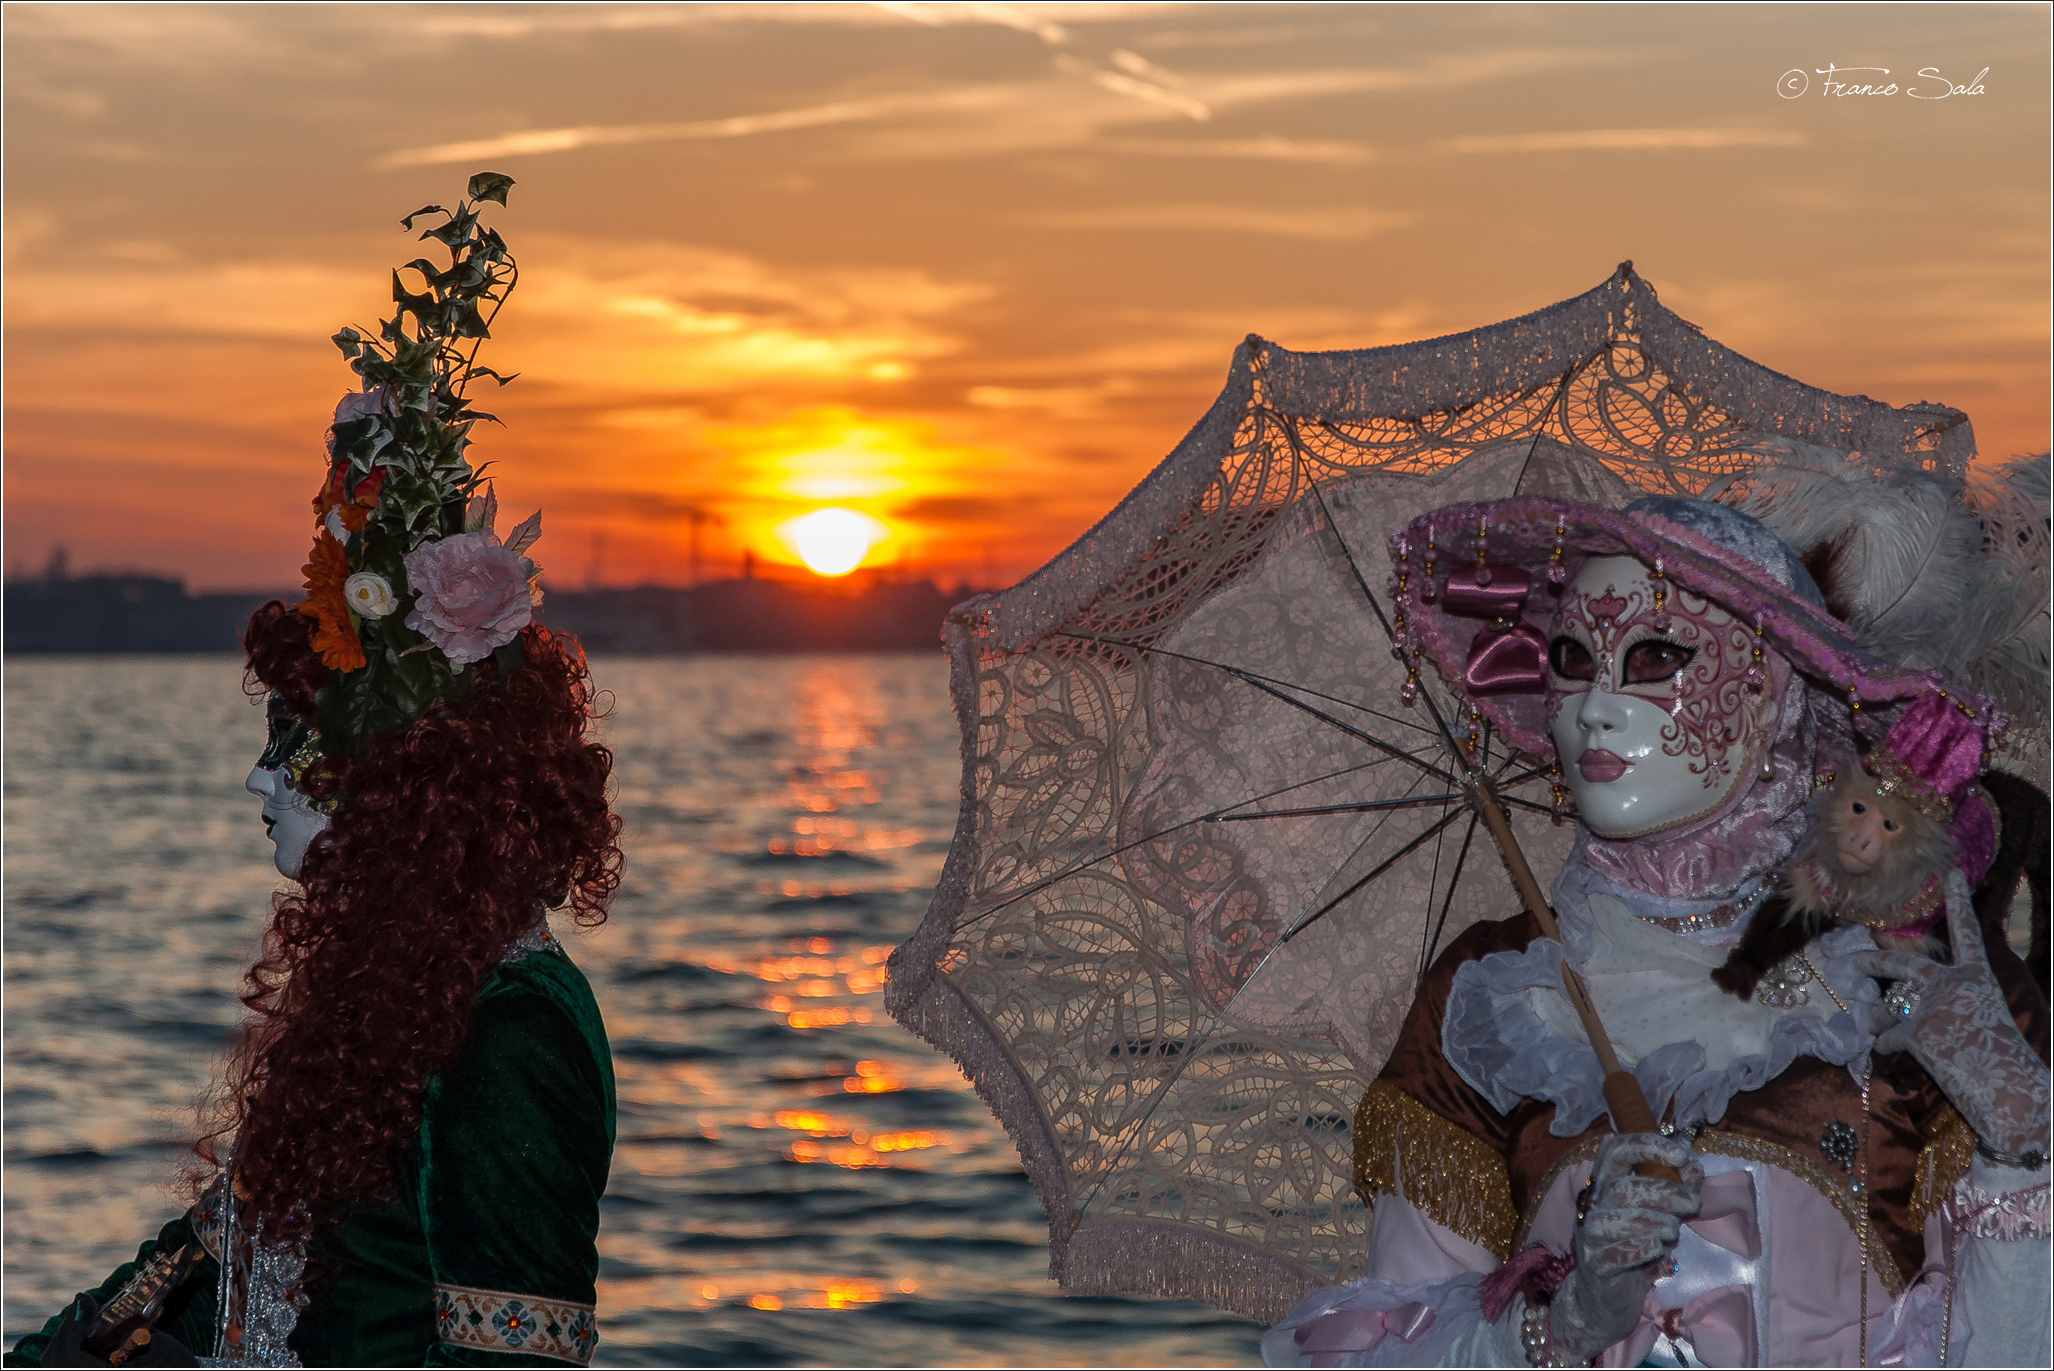 Venetian Masks Carnival 2019...